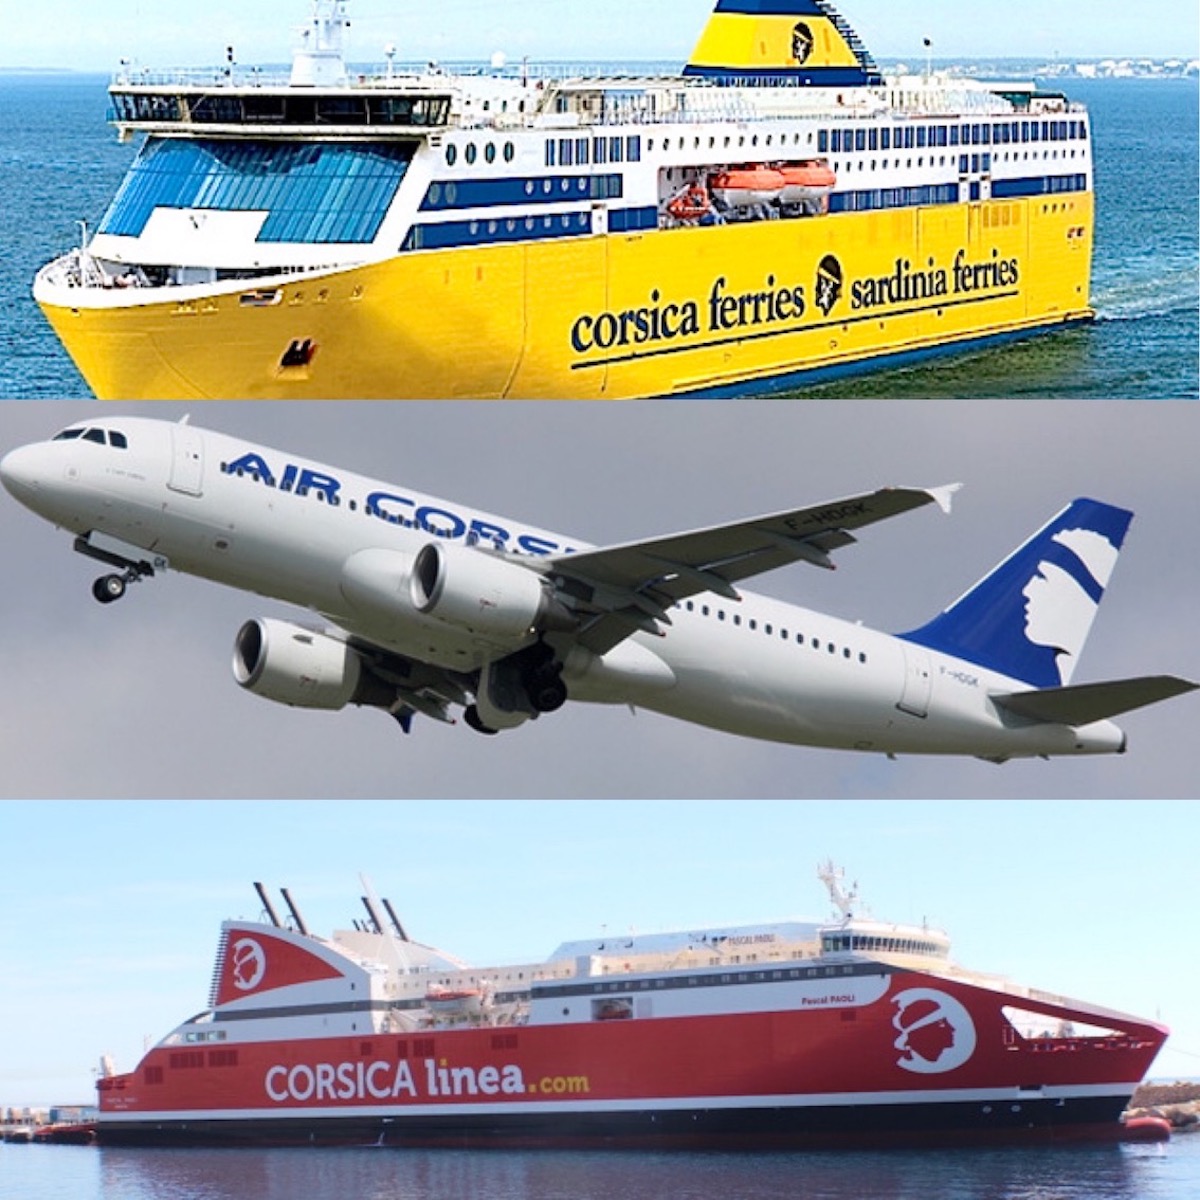 Transports : les réservations vers la Corse pour Noël, en baisse par rapport à l'an passé